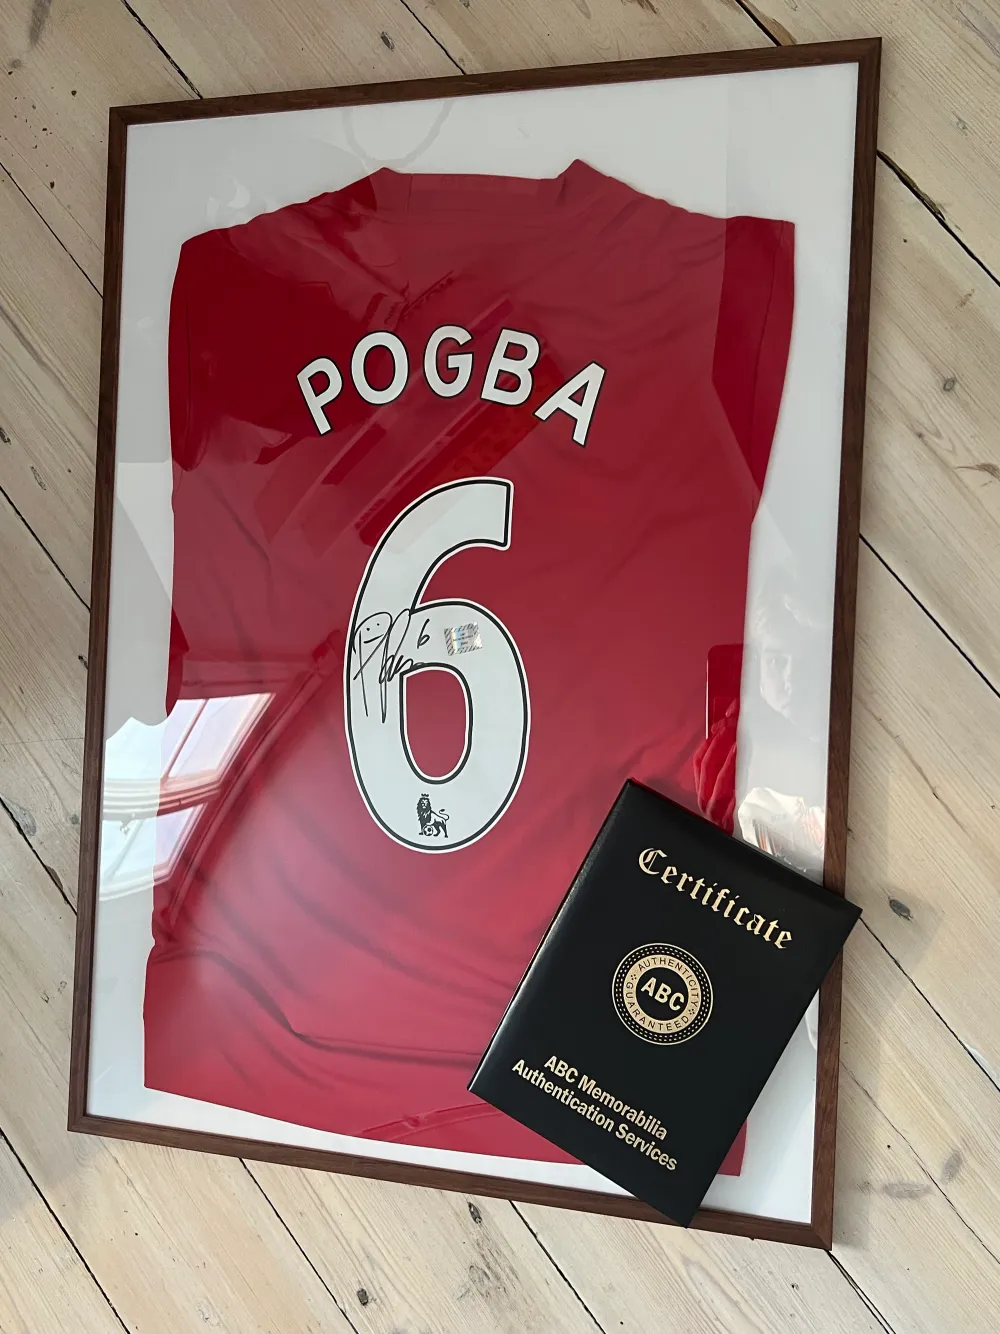 Paul Pogba signerad matchtröja från säsongen 16/17. Paul Pogba gjorde totalt 157 tävlingsmatcher för Manchester United mellan åren 2011-2012 samt 2016-2022. På andra bilden visas ett äkthetsbevis för att aurografen är skriven av Pogba och vilket datum.. T-shirts.